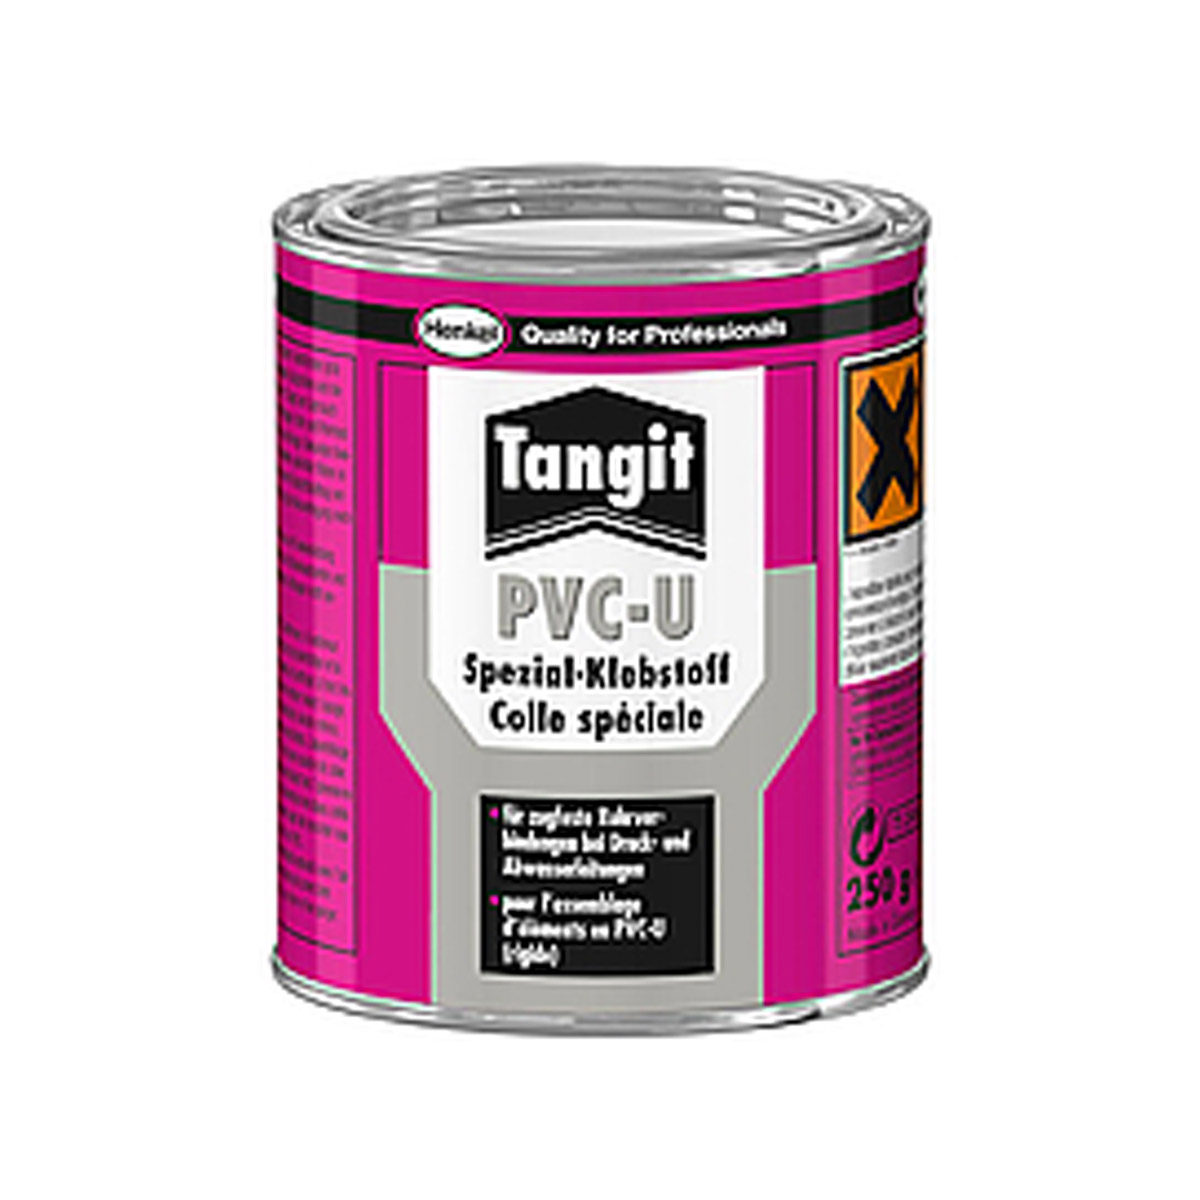 Tangit® PVC-U Spezial-Klebstoff mit Pinsel 250g Tangit® PVC-U Spezial-Klebstoff mit Pinsel 250g